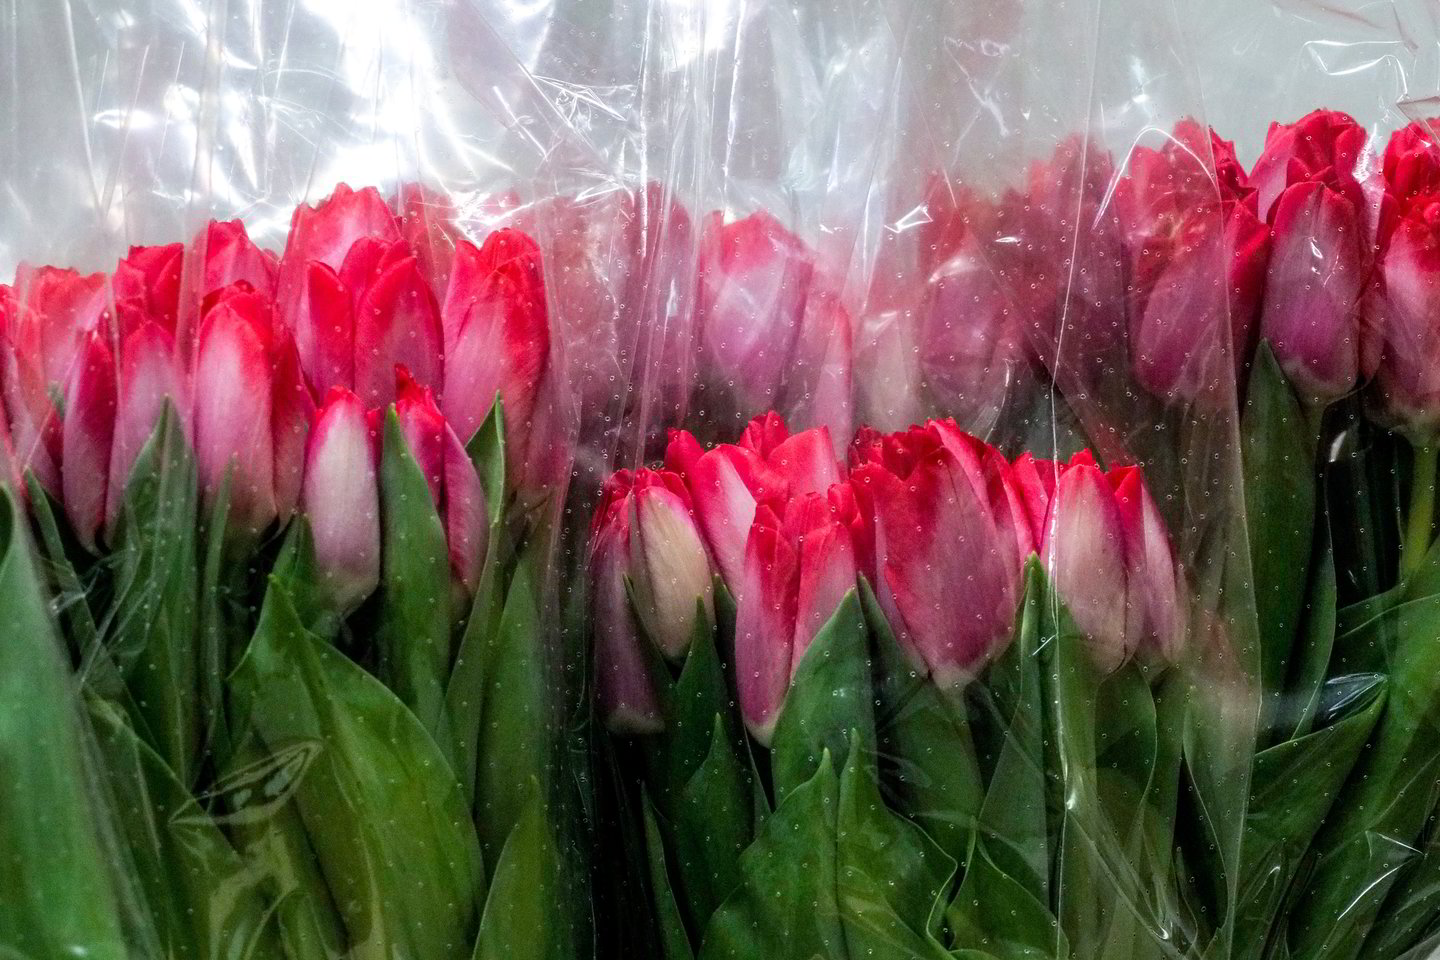  Šios tulpės užaugintos Lietuvoje. Žiedas gėlių baėje kainuoja 0,8 euro. <br> V.Ščiavinsko nuotr.